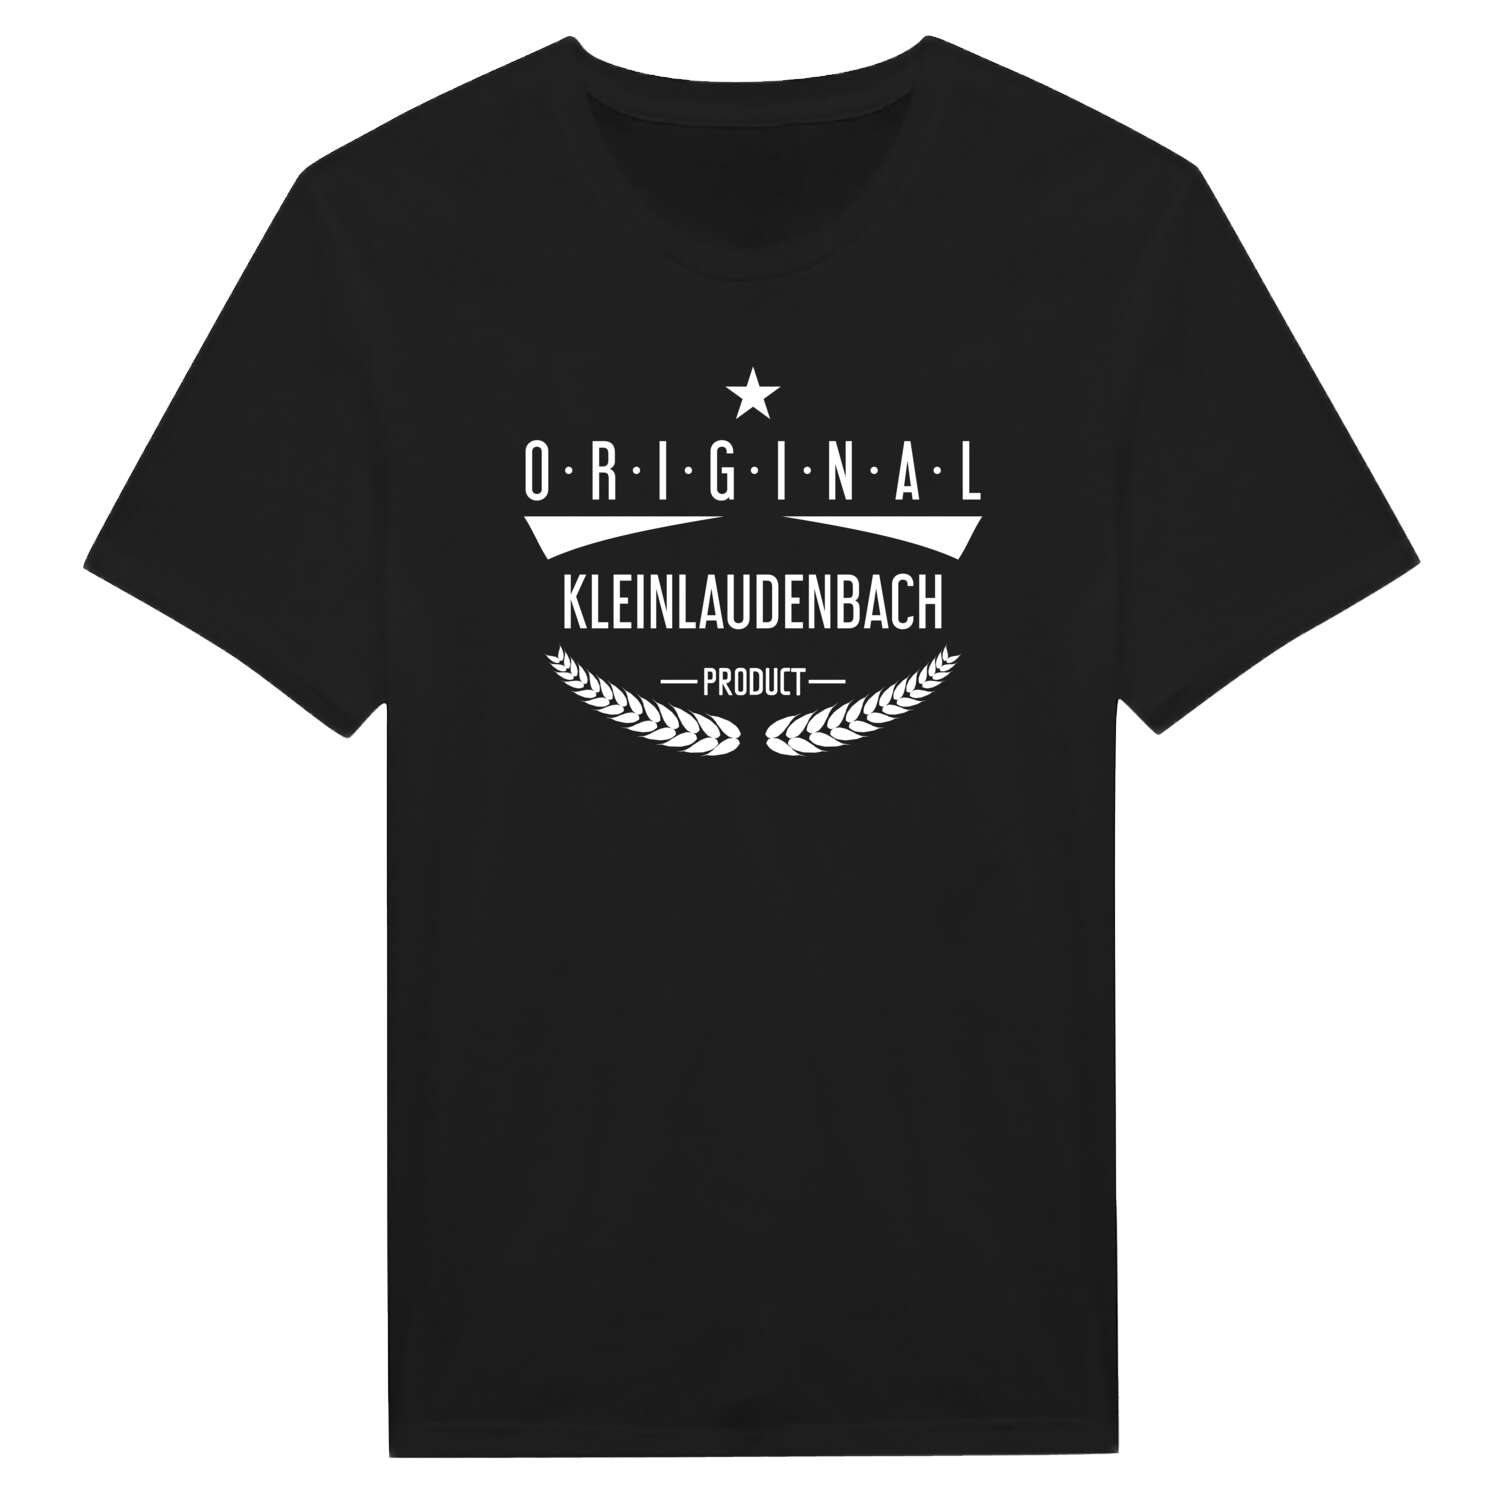 Kleinlaudenbach T-Shirt »Original Product«